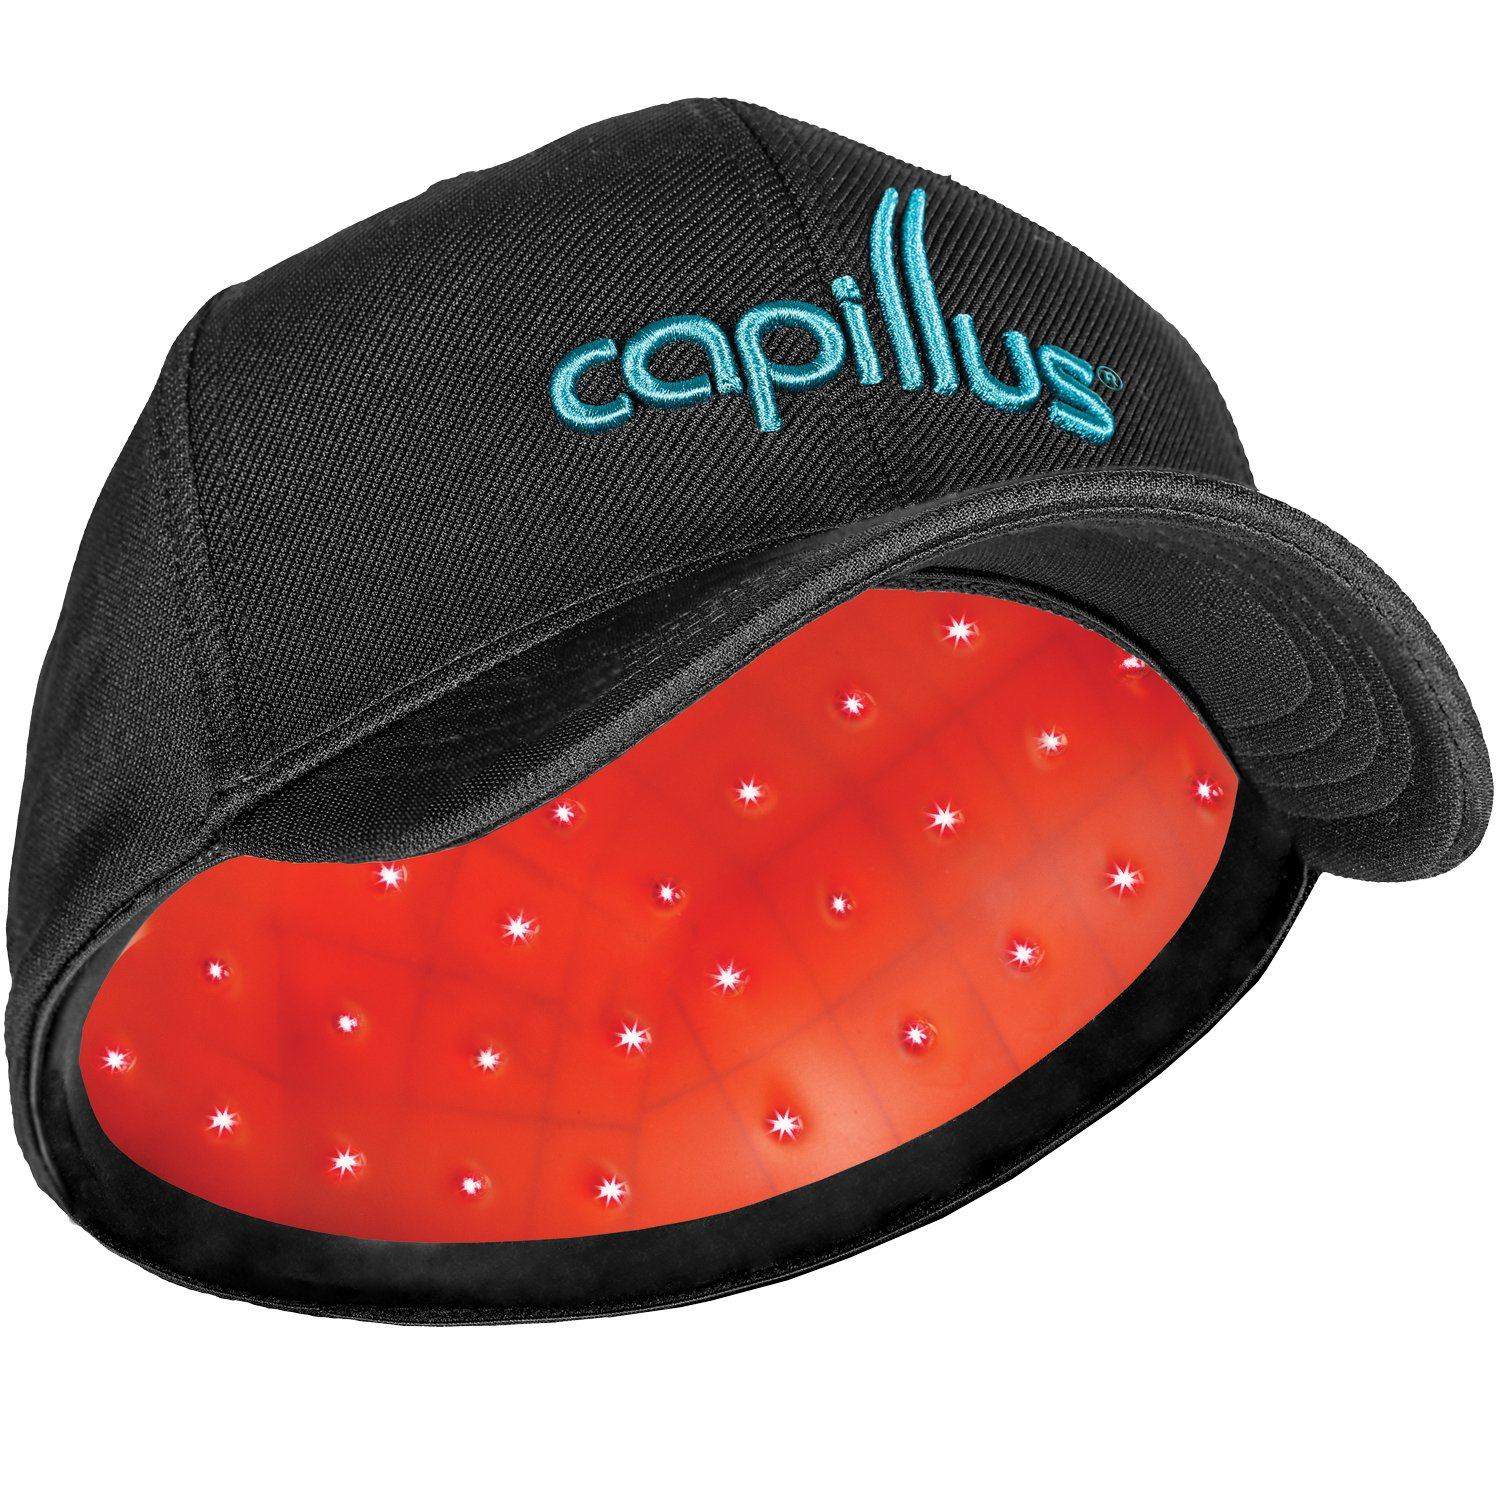 CapillusUltra Cap